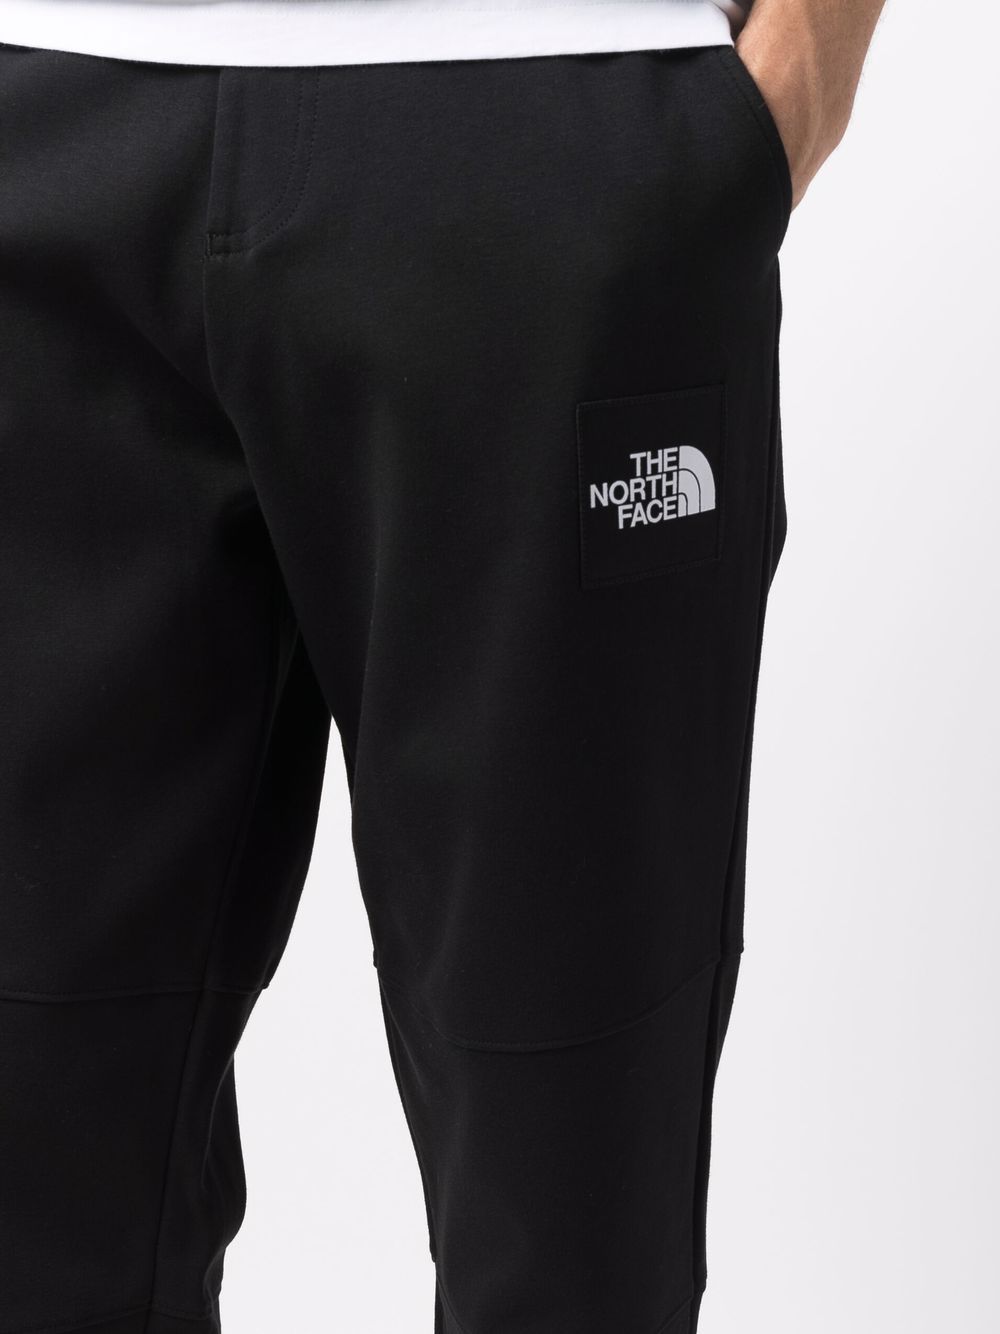 фото The north face спортивные брюки с вышитым логотипом